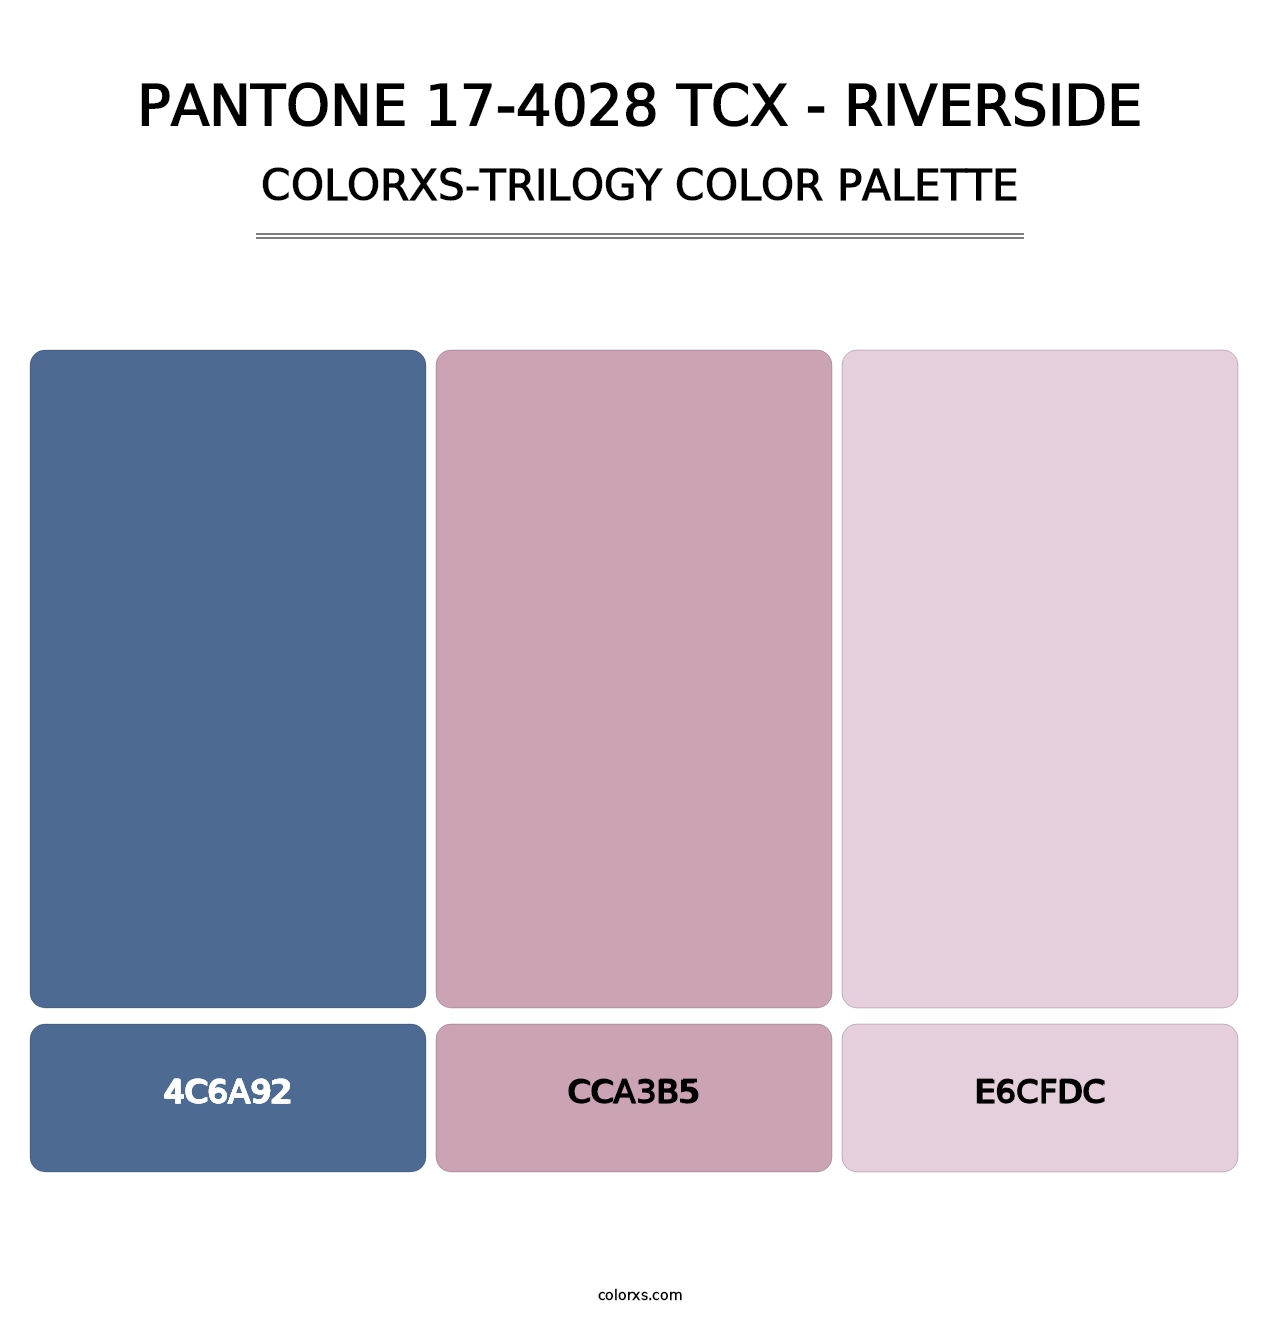 PANTONE 17-4028 TCX - Riverside - Colorxs Trilogy Palette